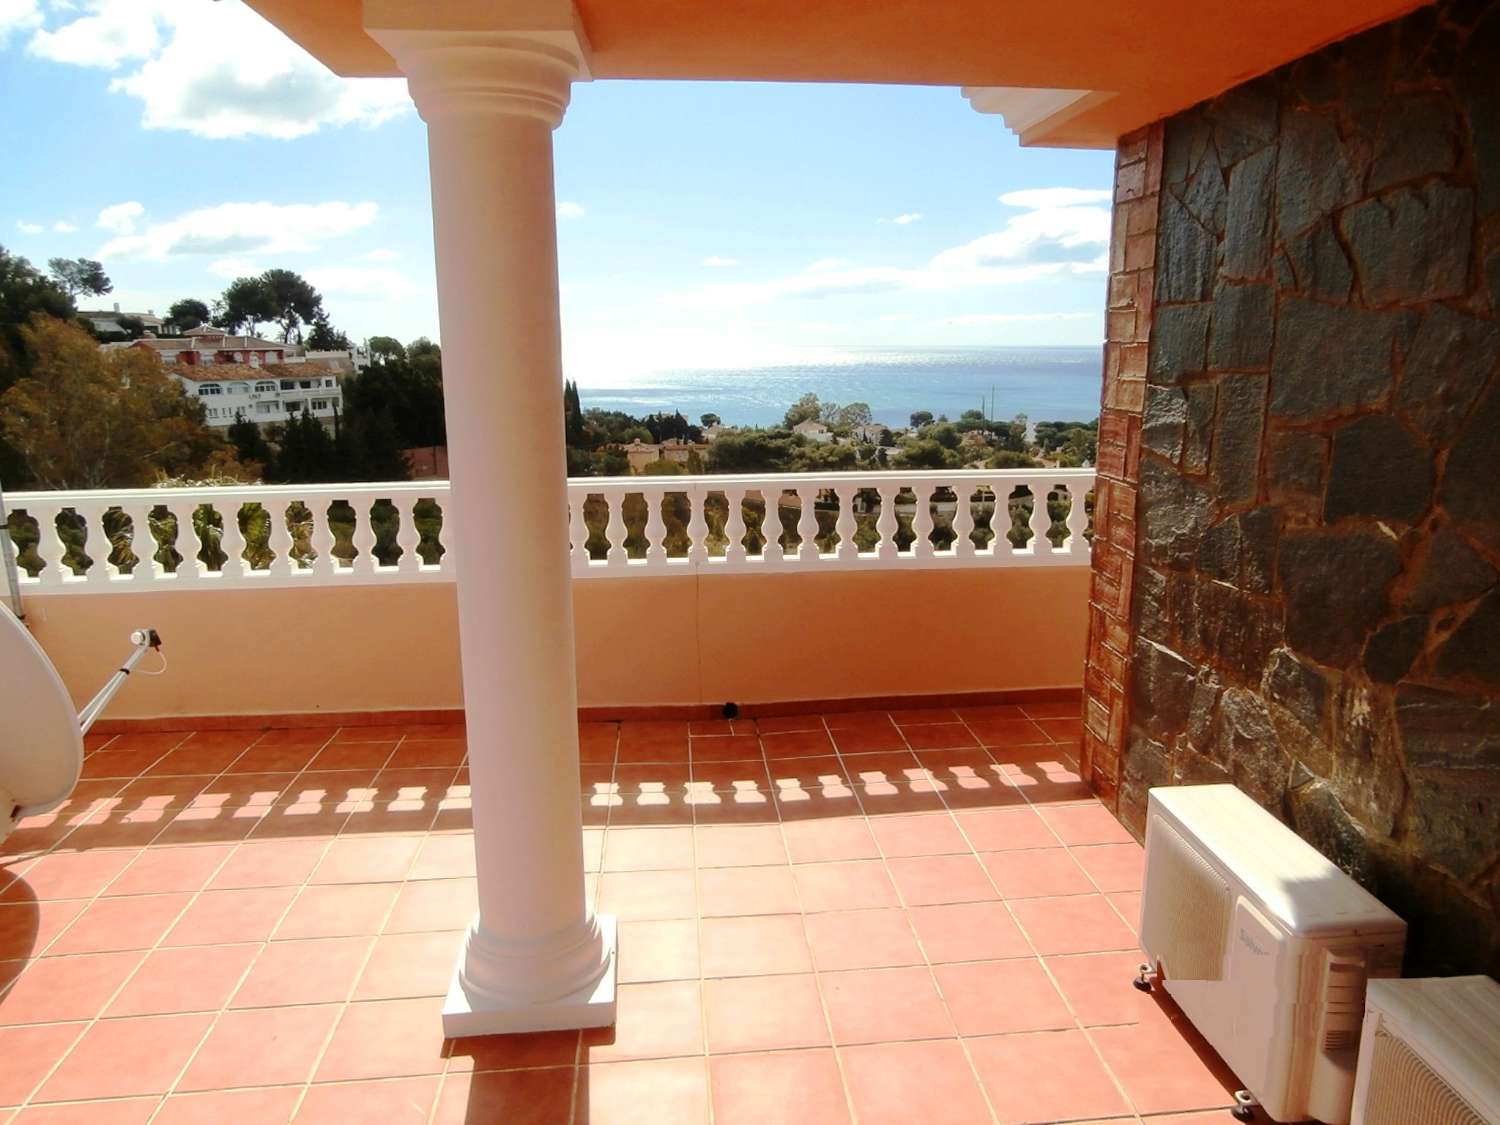 Exklusive unabhängige Villa mit hervorragendem Meerblick in einer der besten Wohngegenden von Benalmadena, La Capellania.